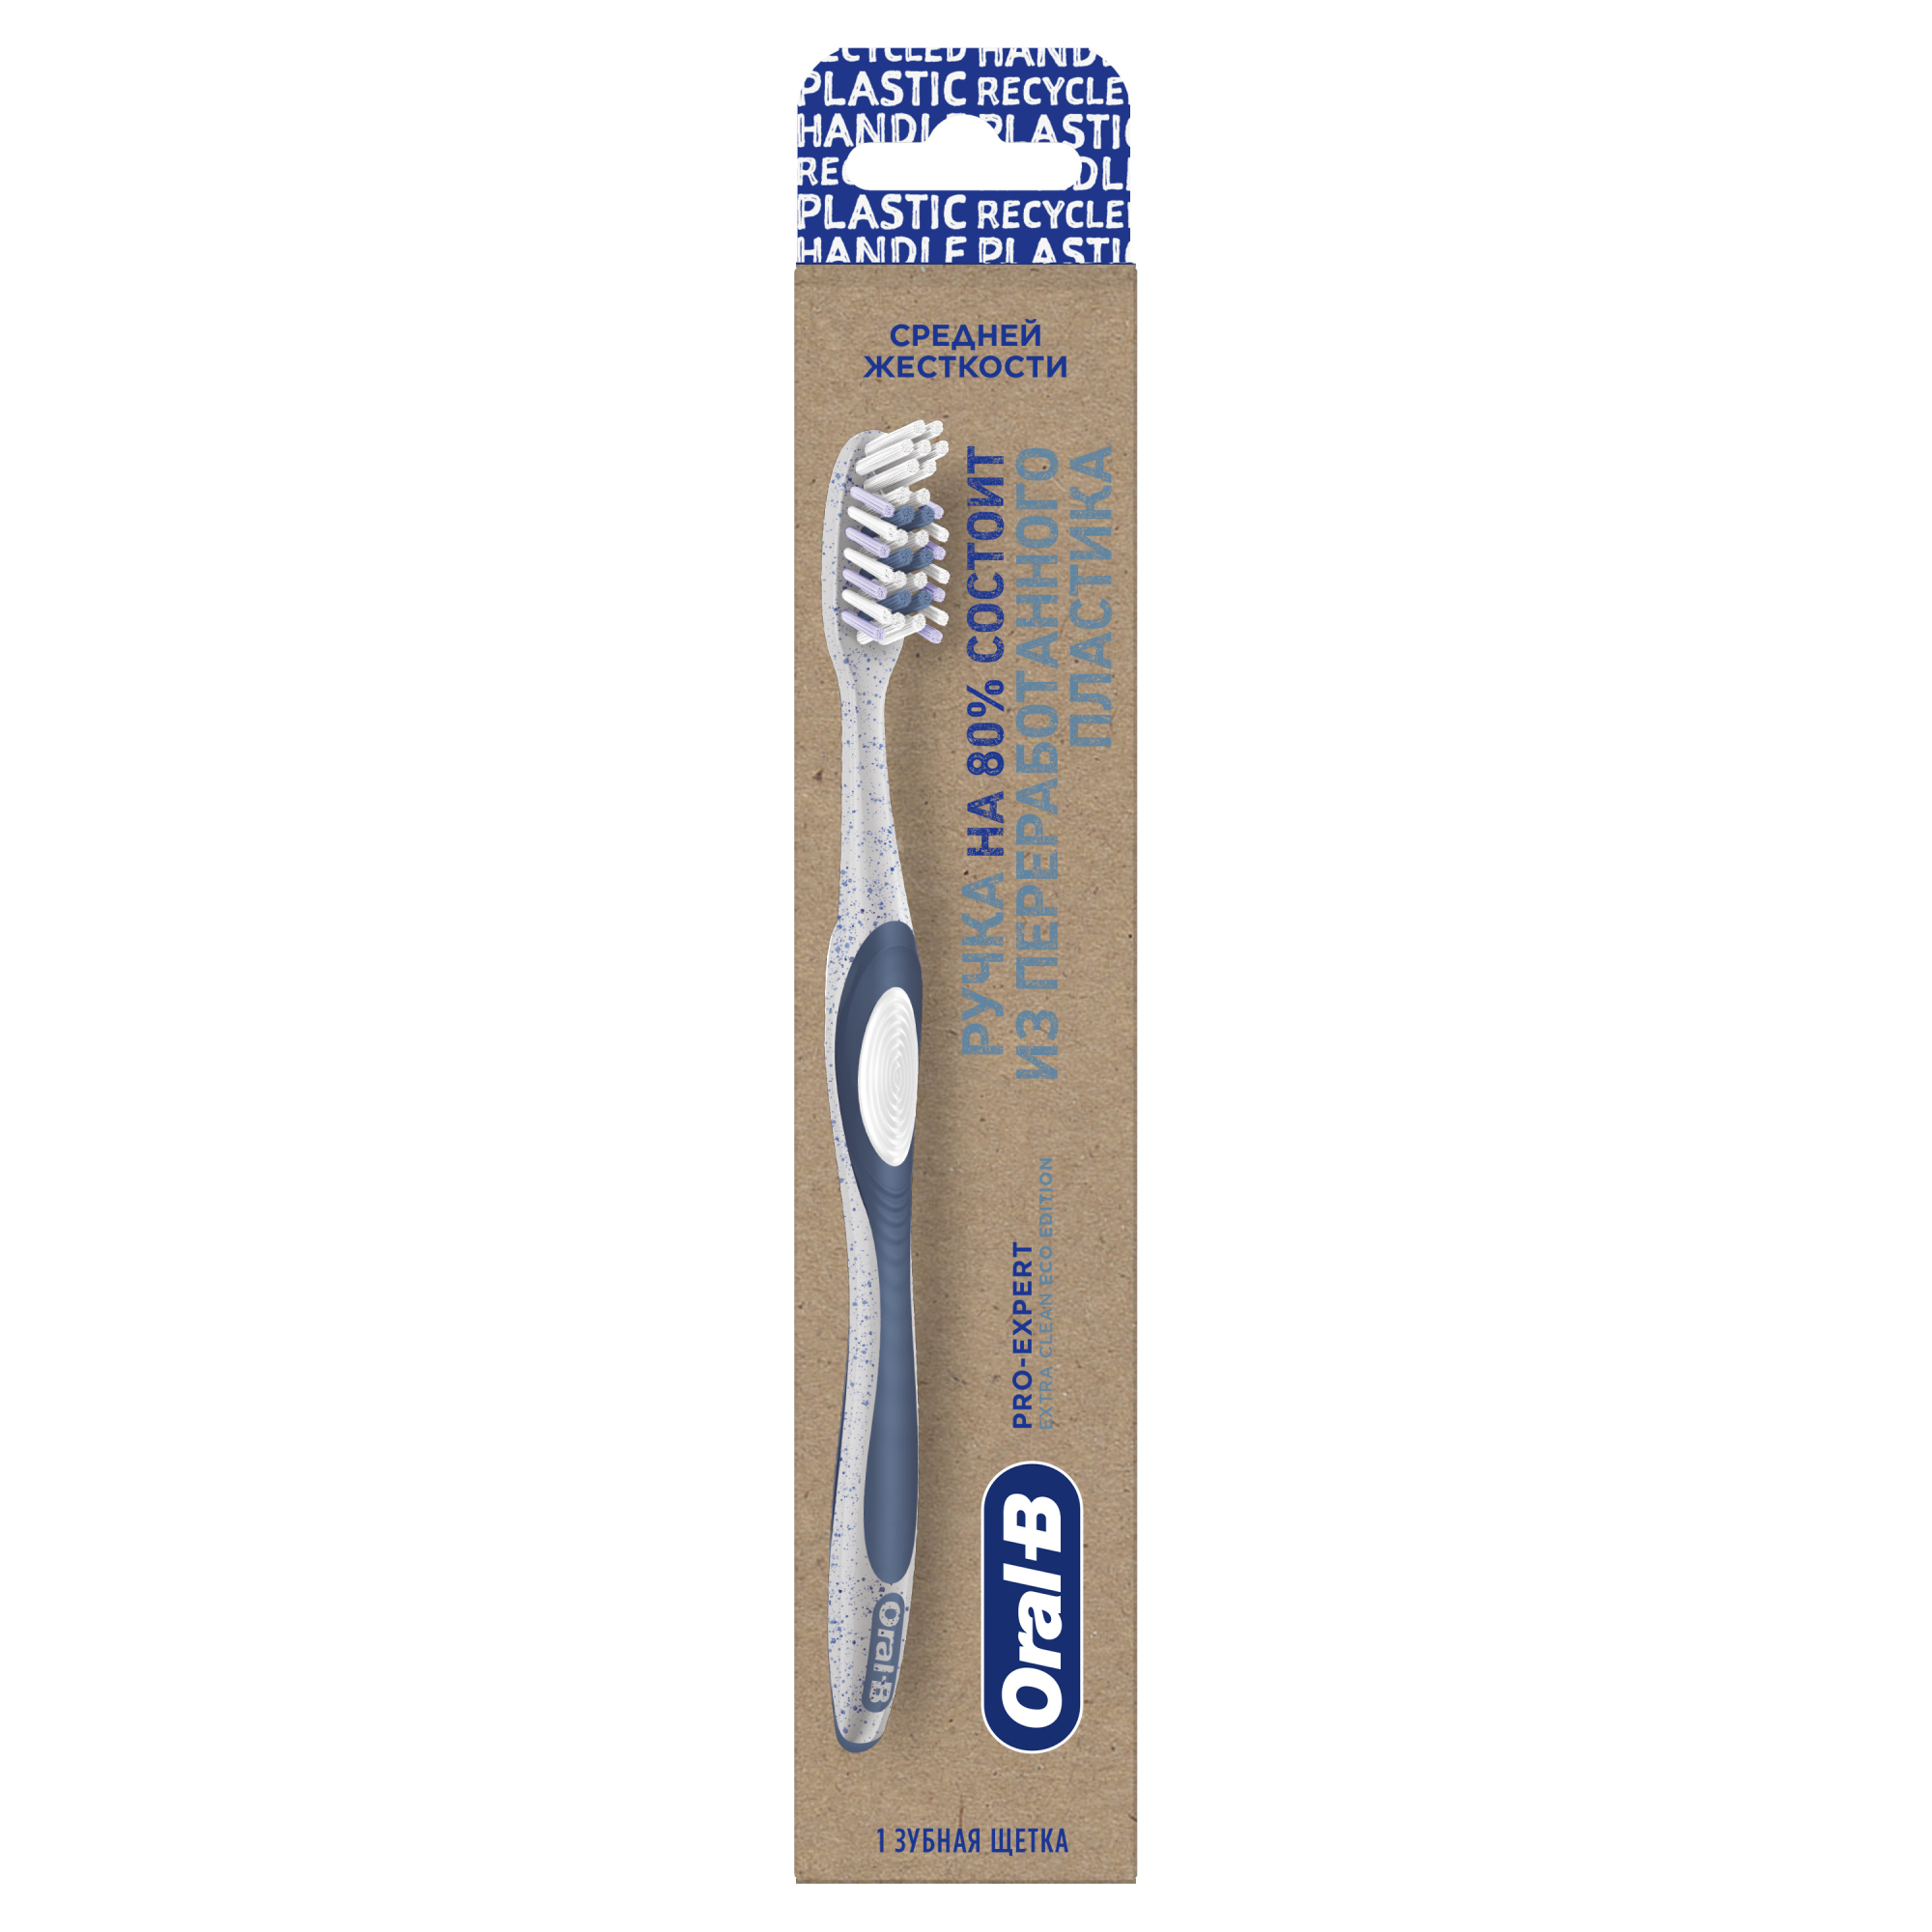 Зубная щетка Oral-B Pro-Expert Eco Edition из переработанного пластика для эффективного очищения, средней жесткости, 1 шт зубная щетка детская 2 9 лет 10 000 щетинок 8 зон ультрамягкая синяя